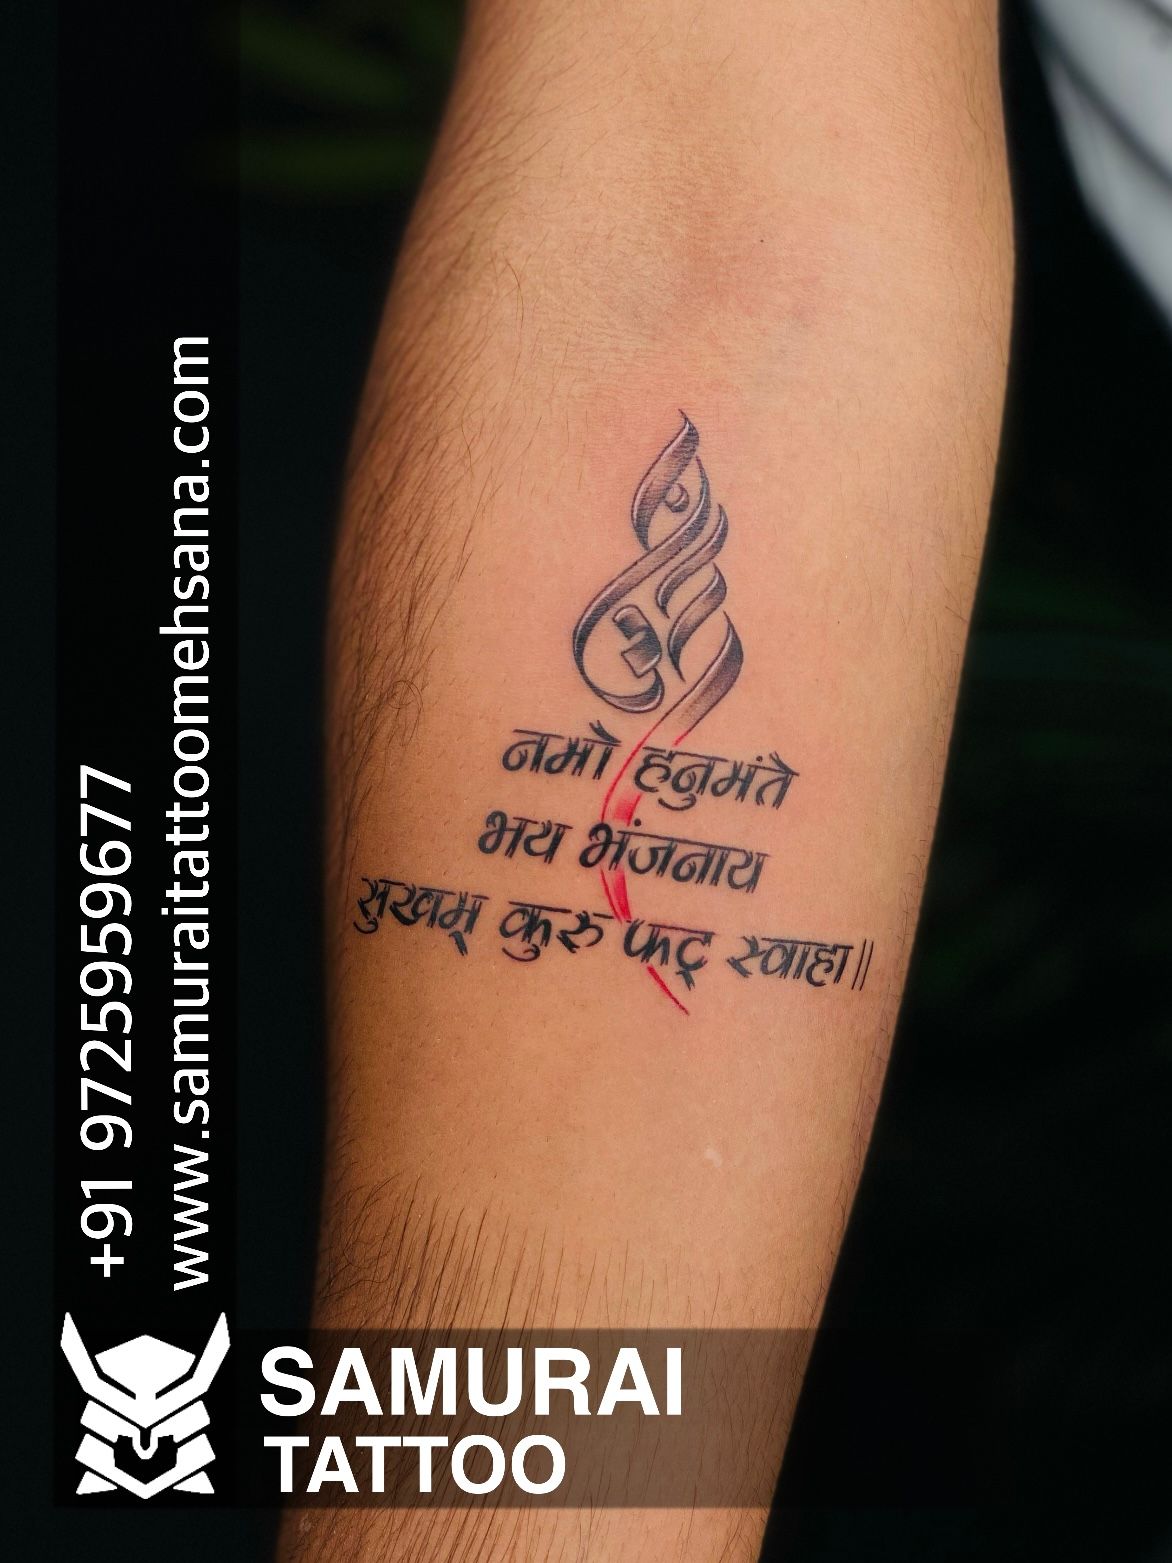 Inkin Tattoo Studio in Begum Pur,Delhi - Best Tattoo Parlours in Delhi -  Justdial